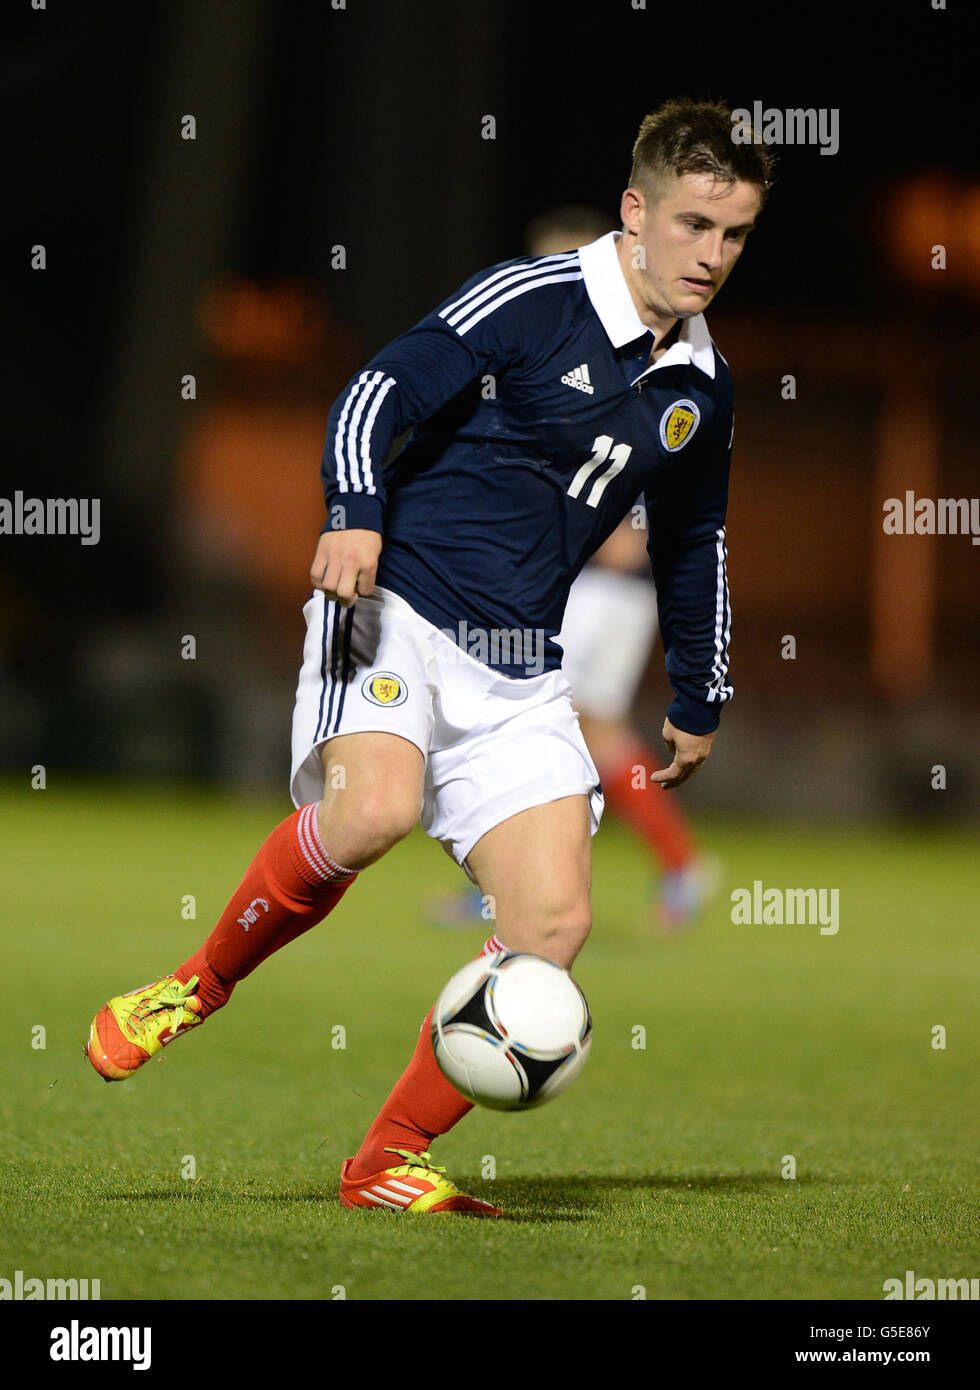 Calcio - UEFA Campionato europeo under 21 2013 - Gruppo Ten - Scozia contro Lussemburgo - Saint Mirren Park. Rhys McCabe della Scozia Foto Stock